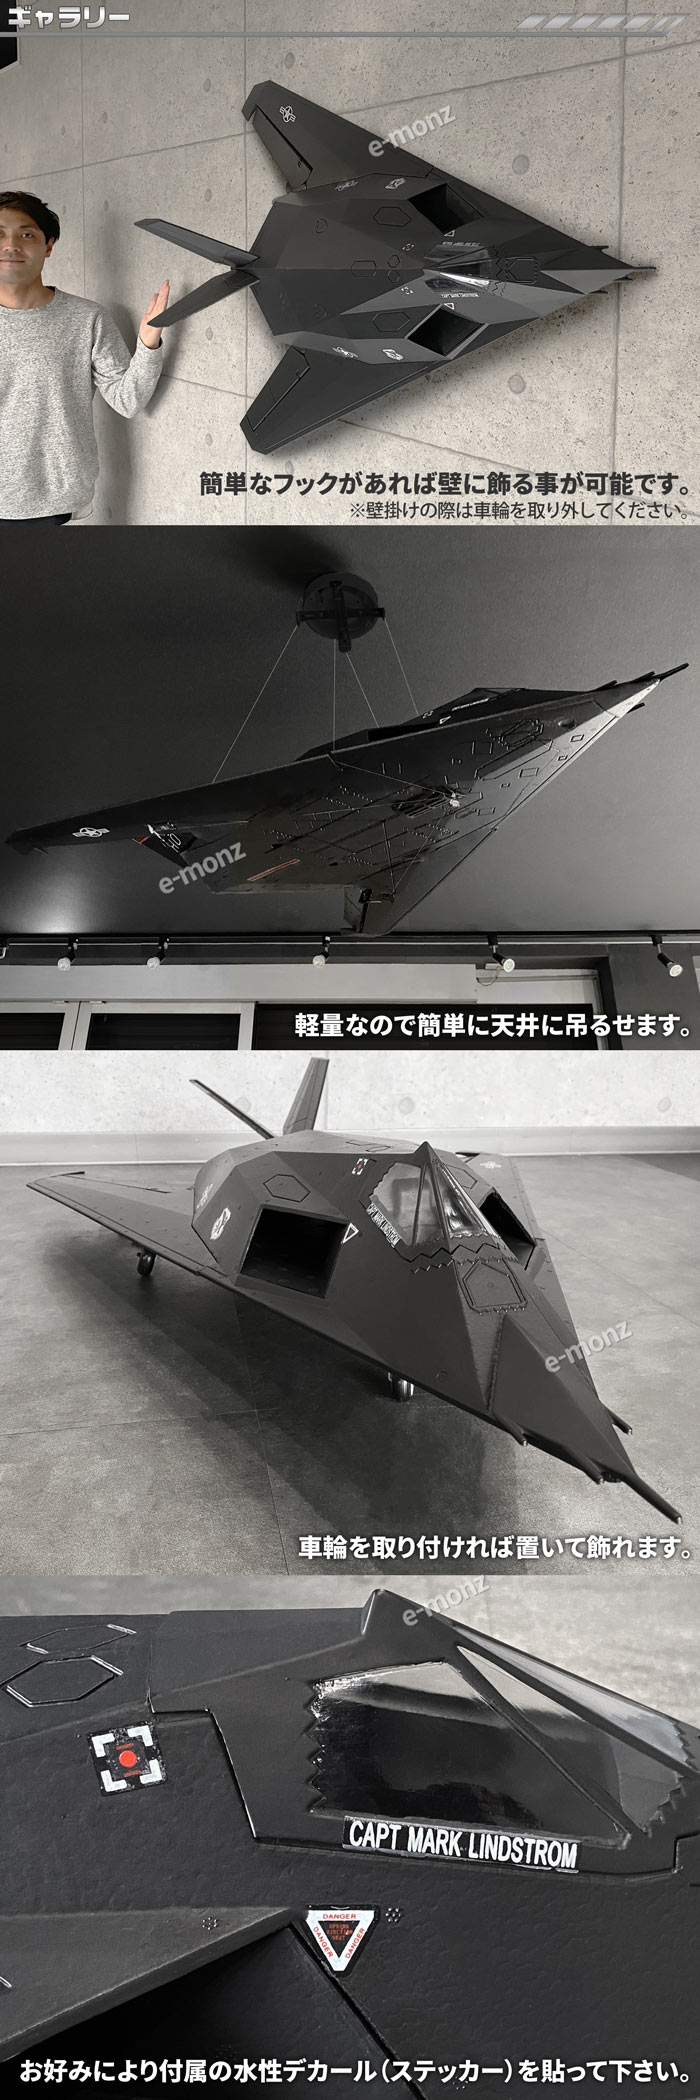 퓬@͌^ F-117